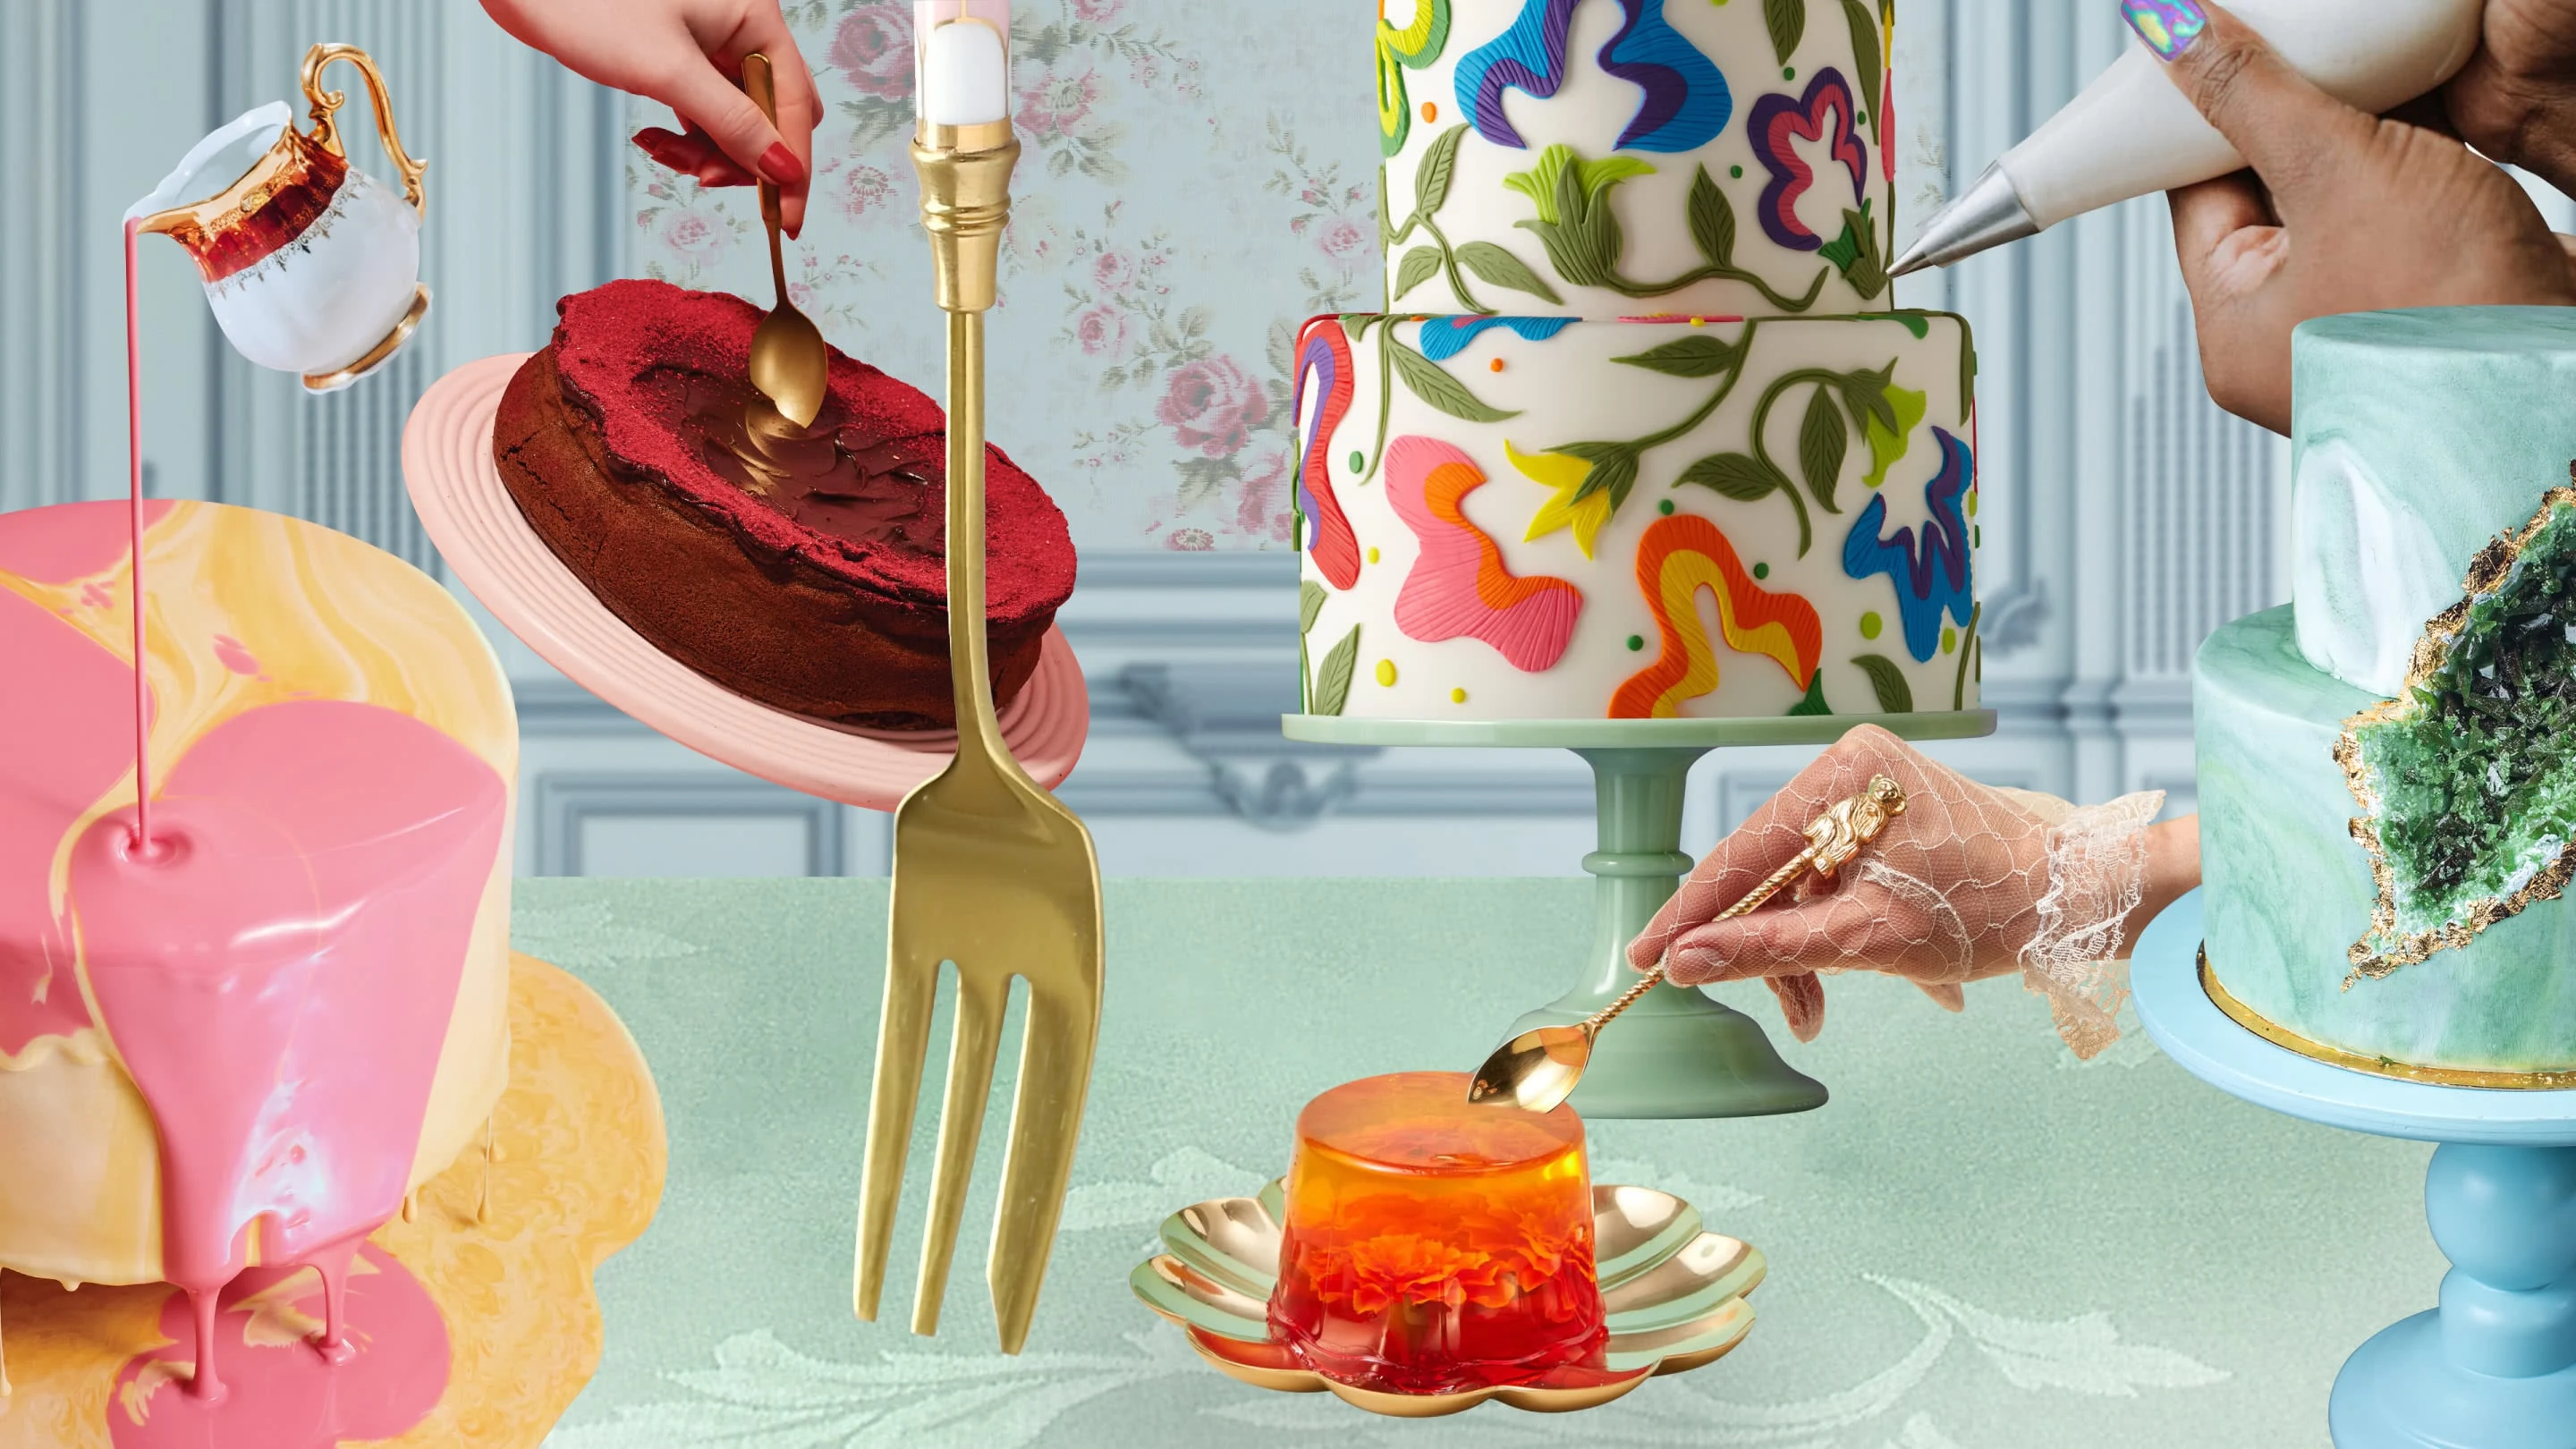 Collage di torte. Una torta rotonda gialla con sopra un bricco da cui scende una glassa rosa. Una red velvet cake con il cuore di cioccolato. Una torta a due piani con dei fiori fatti di pasta di zucchero. Una gelatina arancione. Geode cake verde chiaro. 